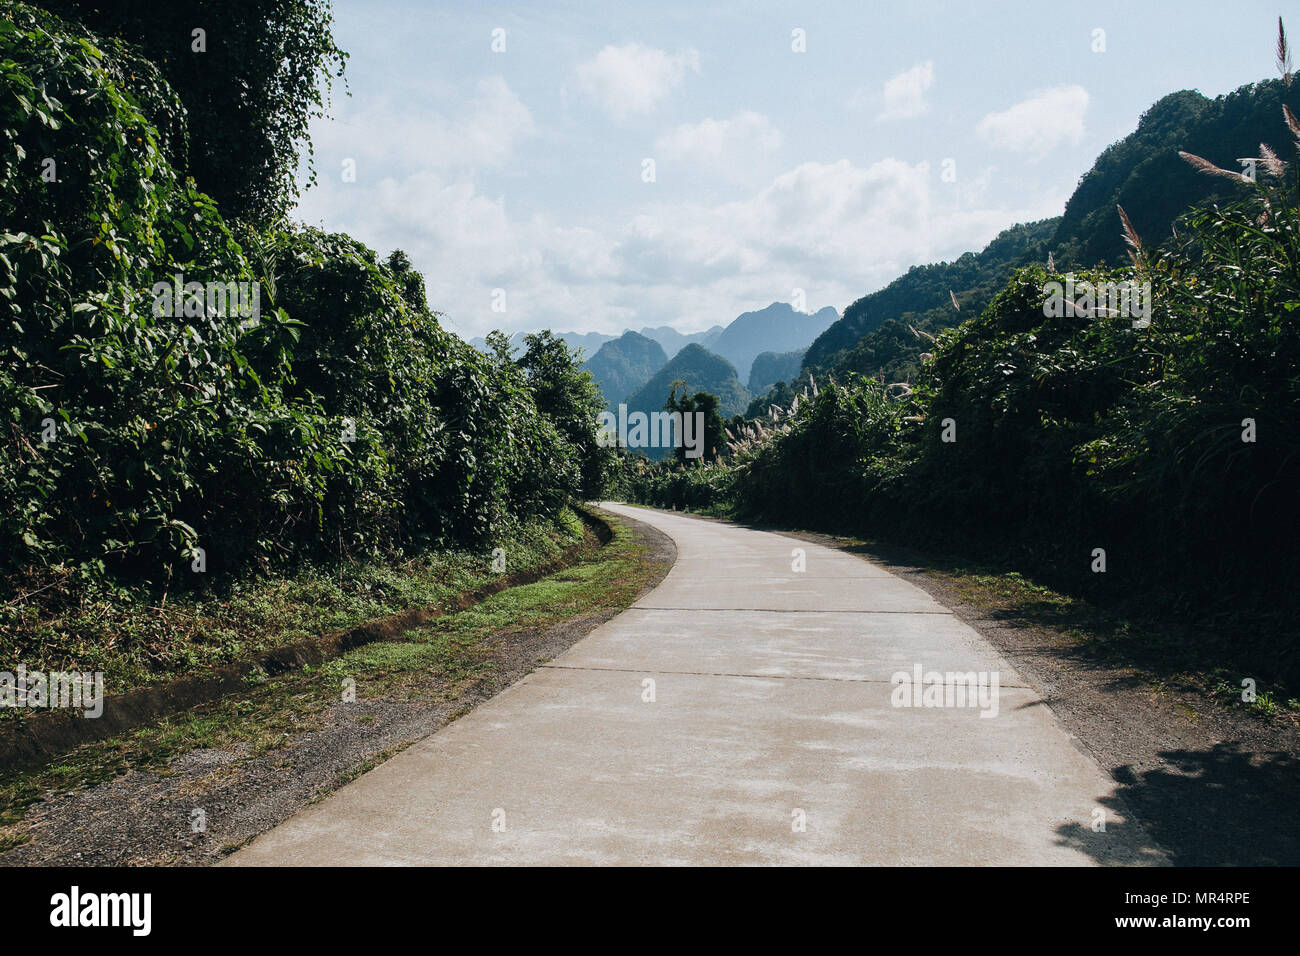 rural road in beautiful mountains at Phong Nha Ke Bang National Park, Vietnam Stock Photo